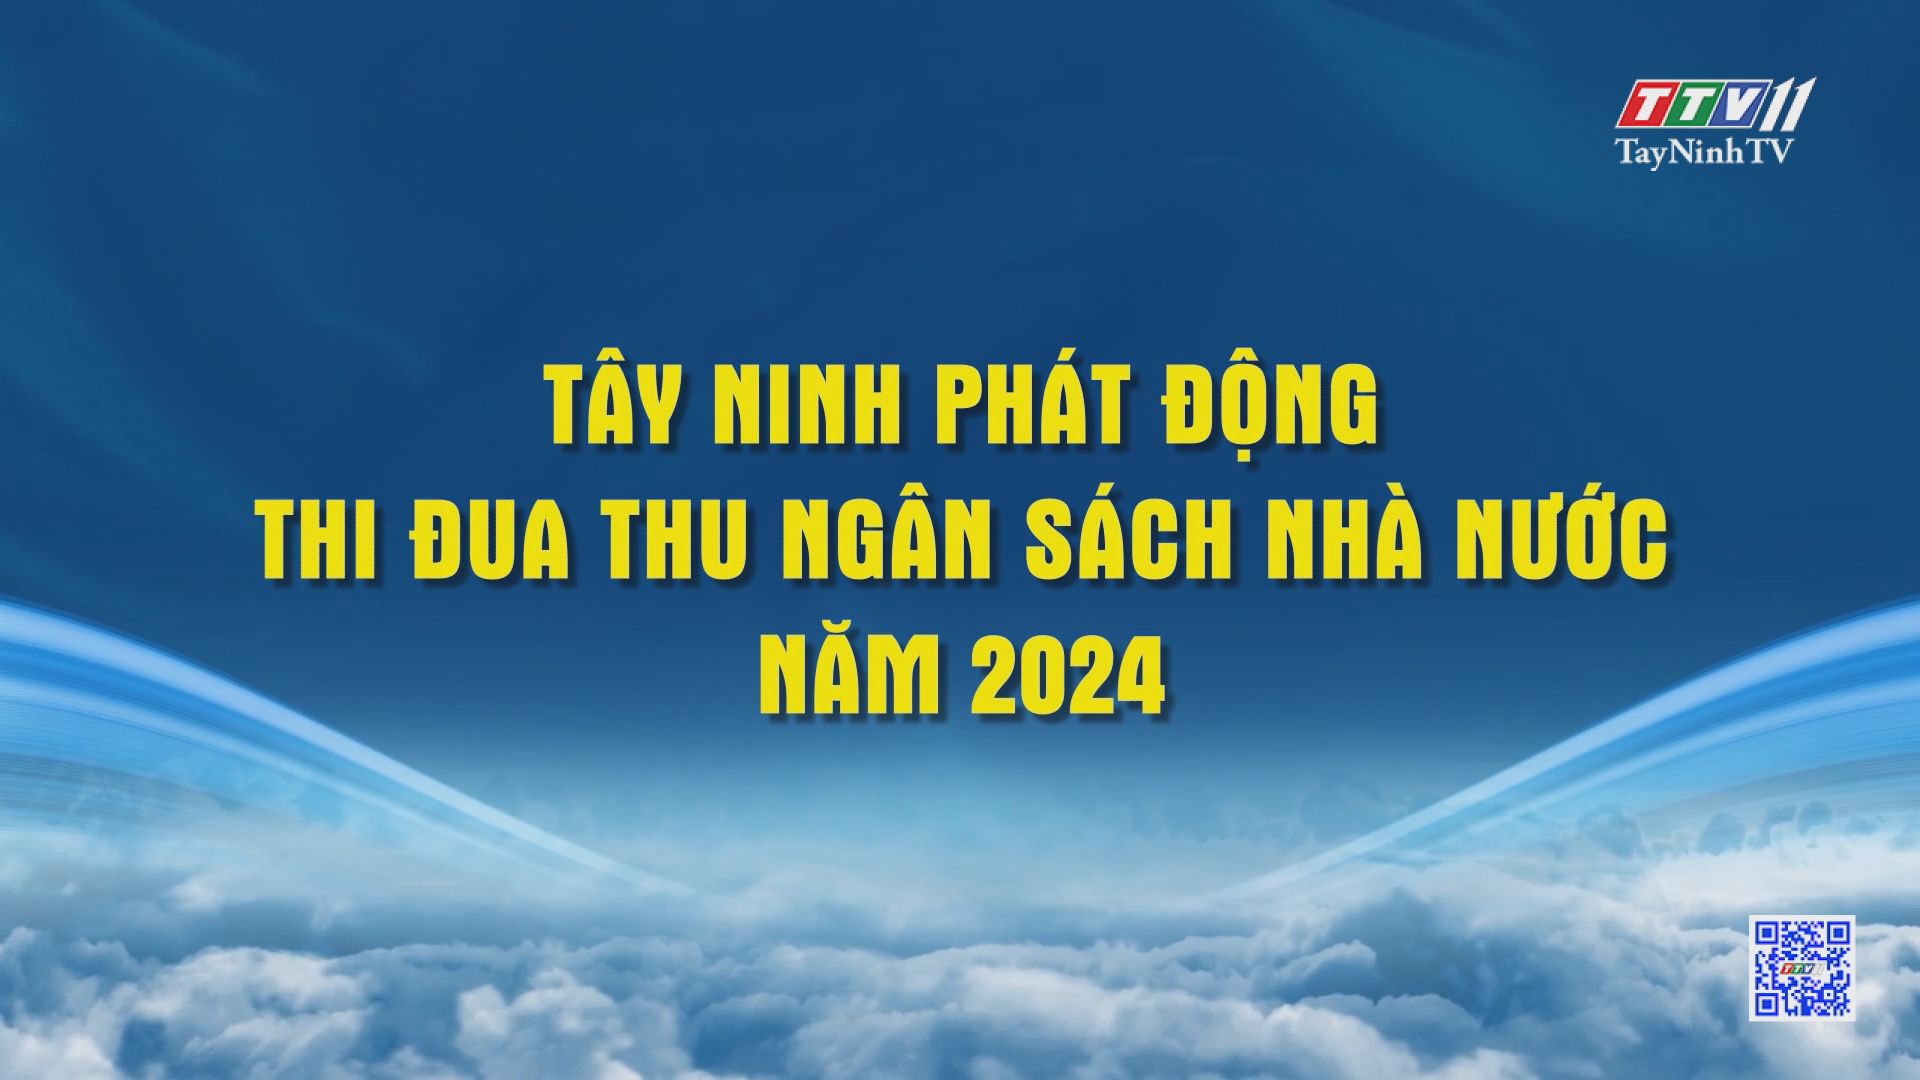 Tây Ninh phát động thi đua thu ngân sách nhà nước năm 2024 | Những vấn đề hôm nay | TayNinhTV